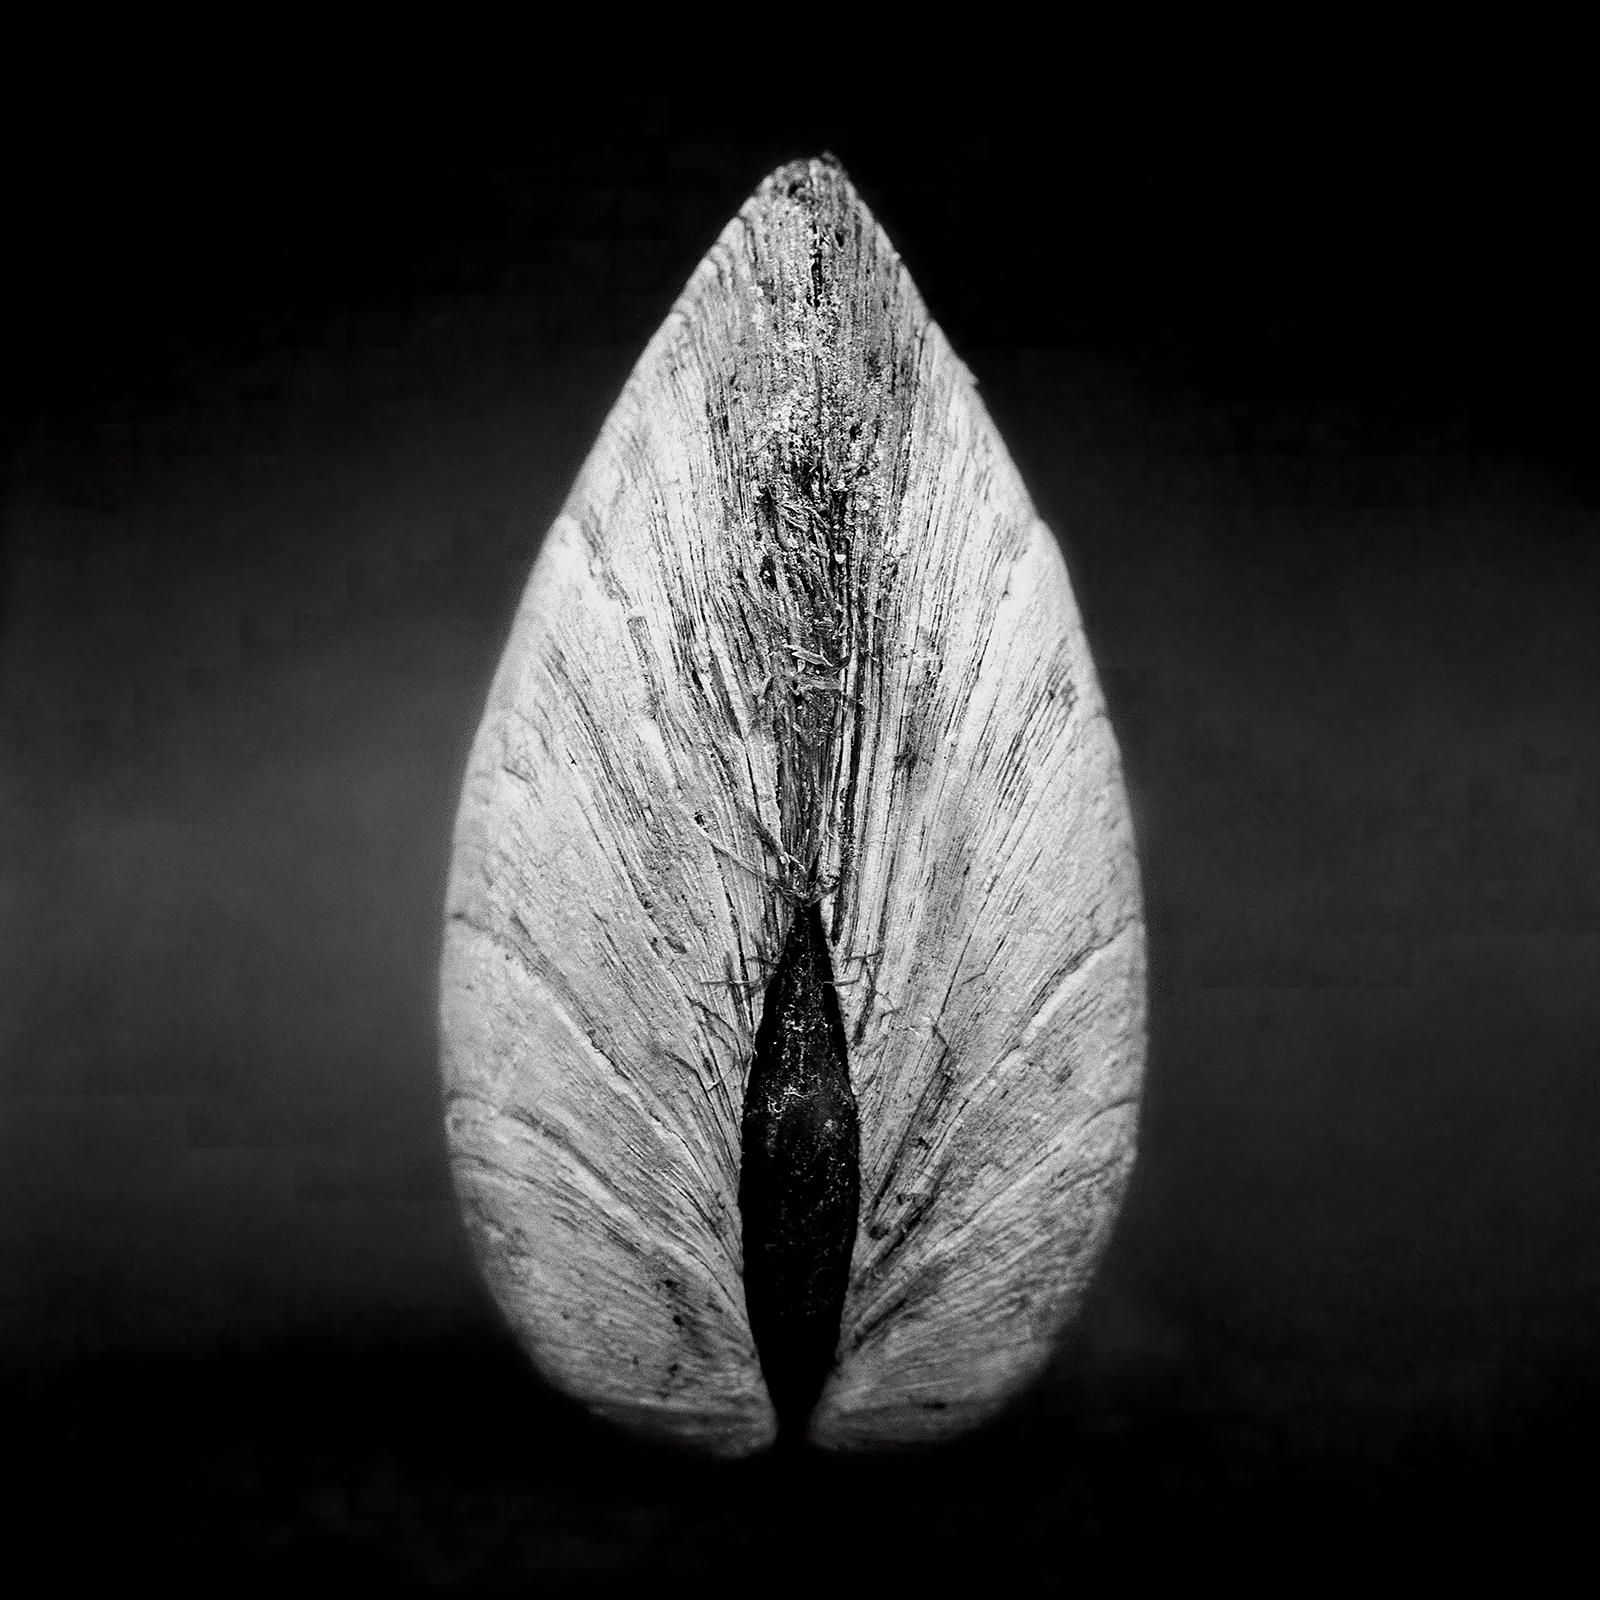 Black and White Photograph Ian Sanderson - Clam 02 - Tirage d'art contemporain signé, édition limitée, carré noir et blanc 